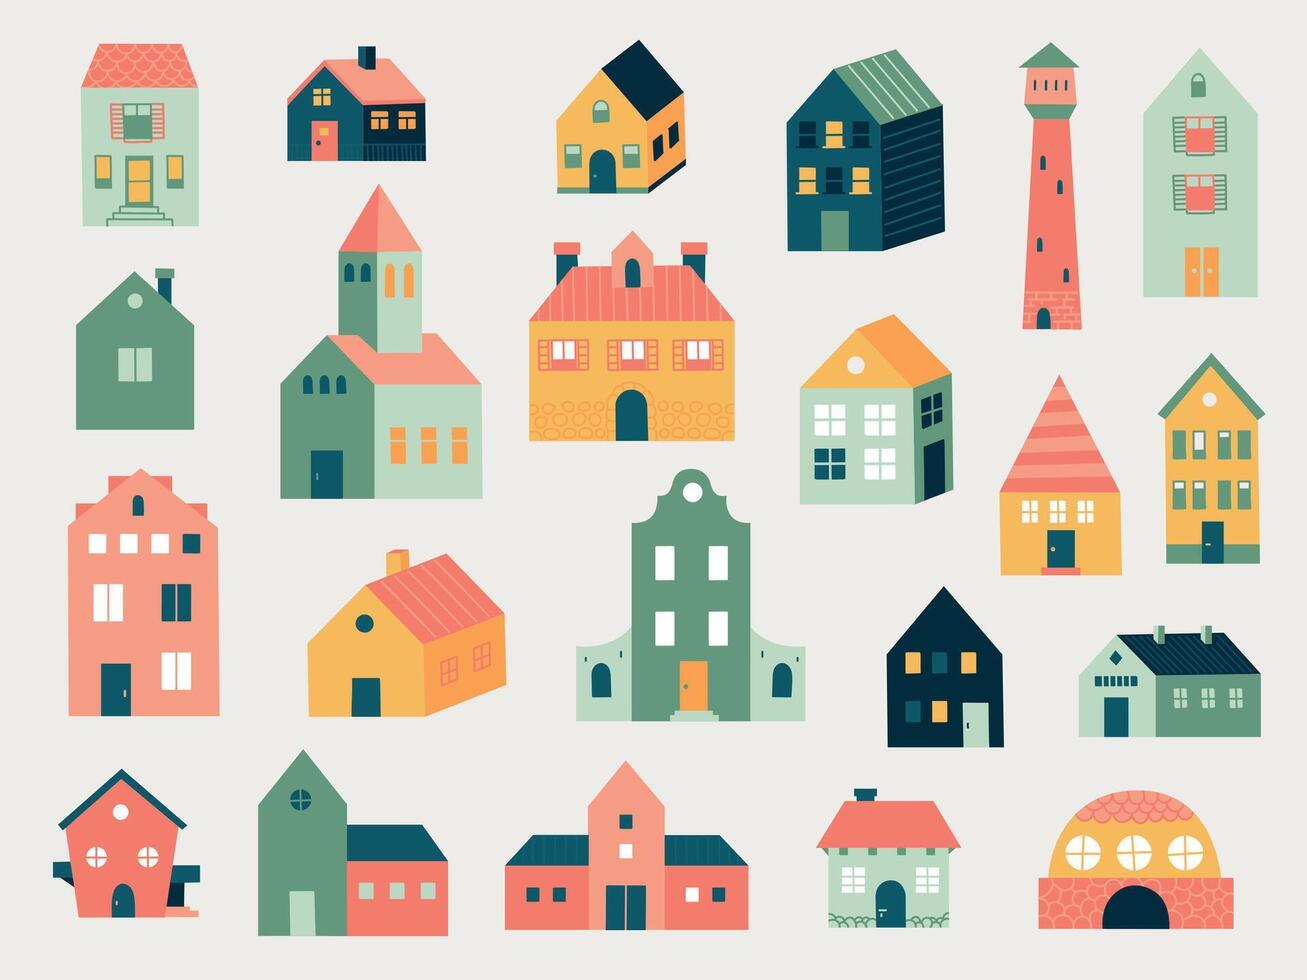 garabatear de colores casas resumen mano dibujado línea cabaña casas y rural granja edificios, linda pequeño barrio casas vector aislado conjunto